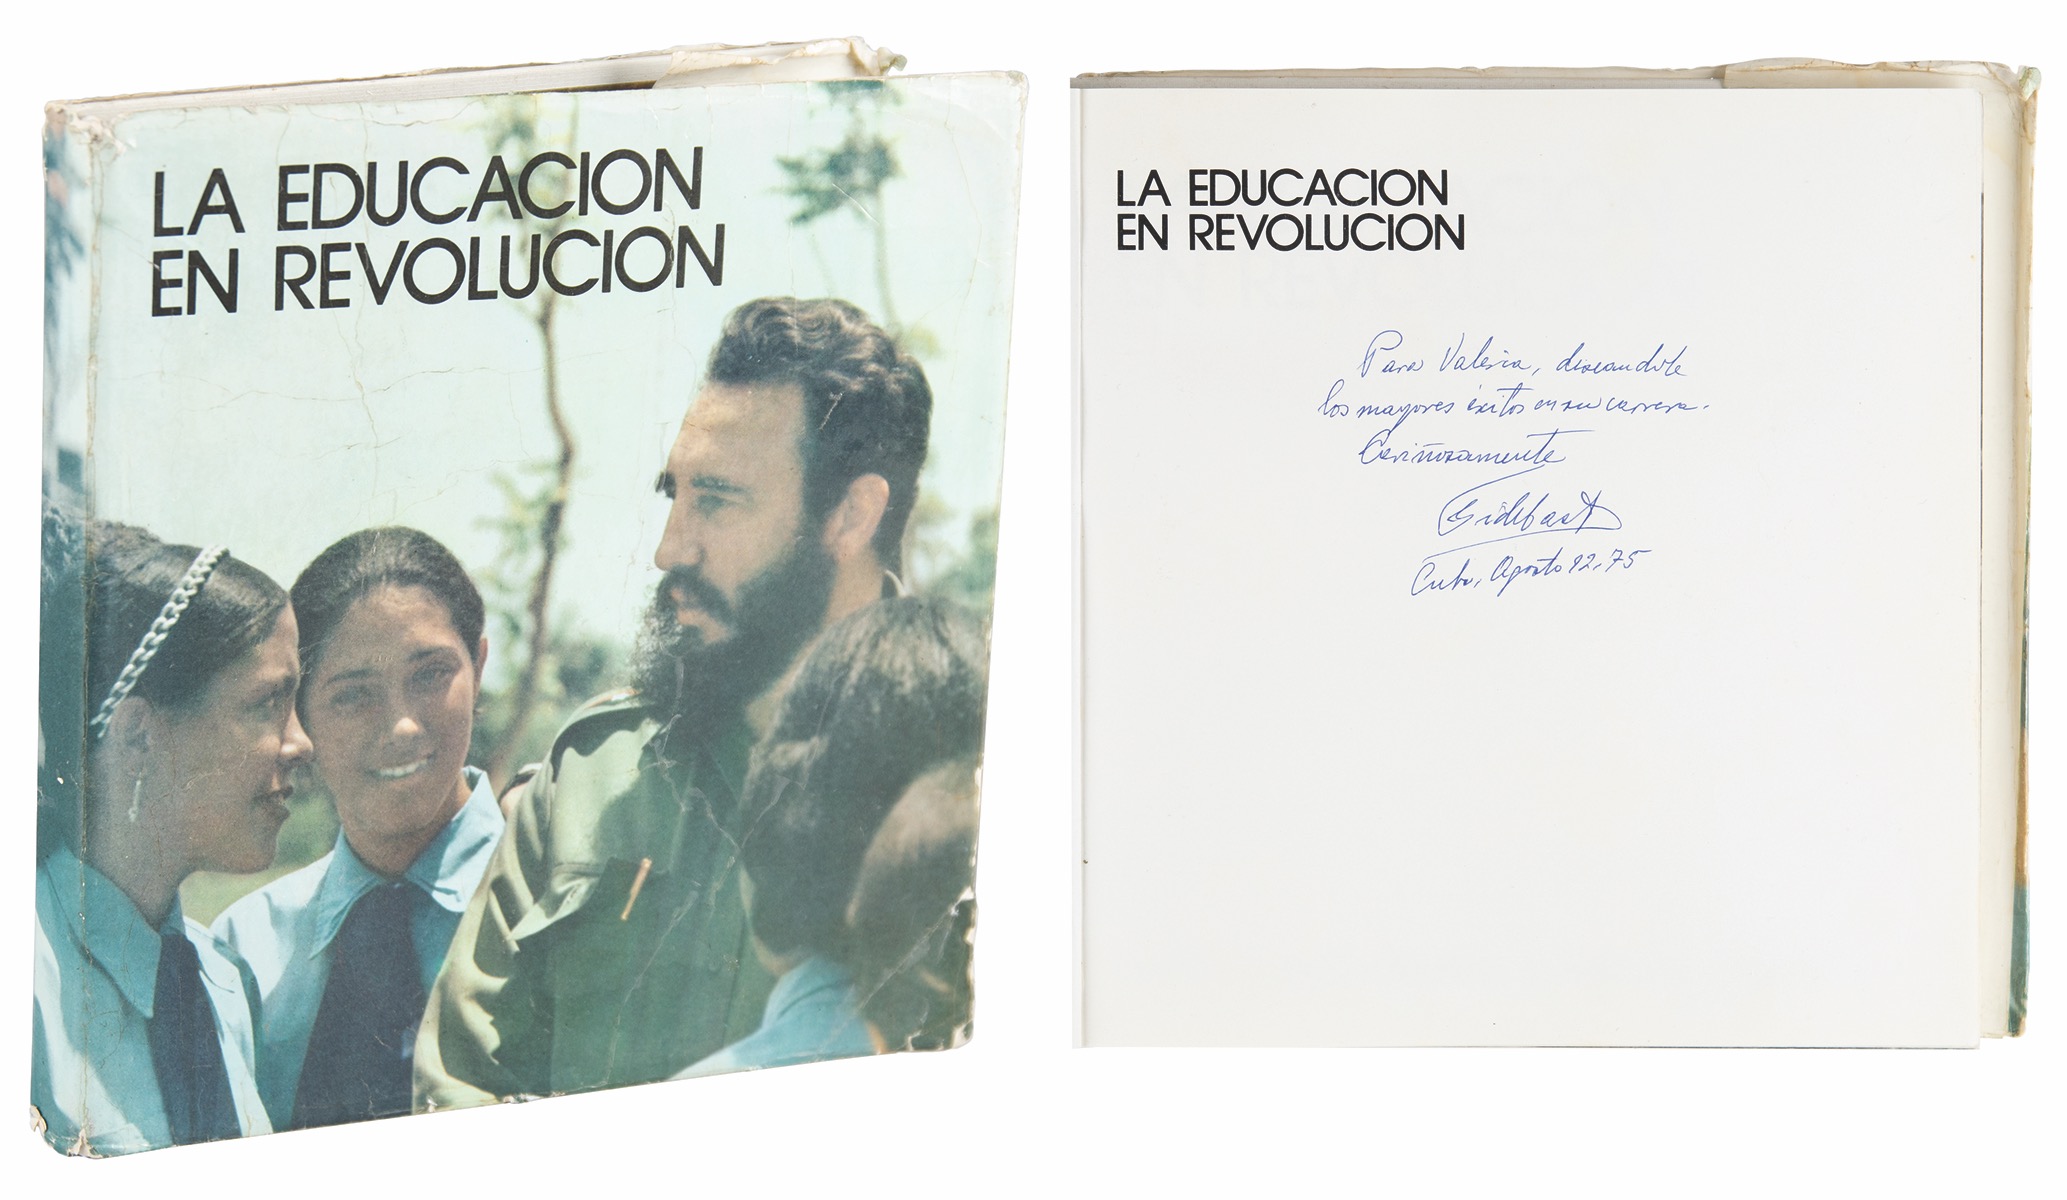 Lot #98 Fidel Castro Signed Book